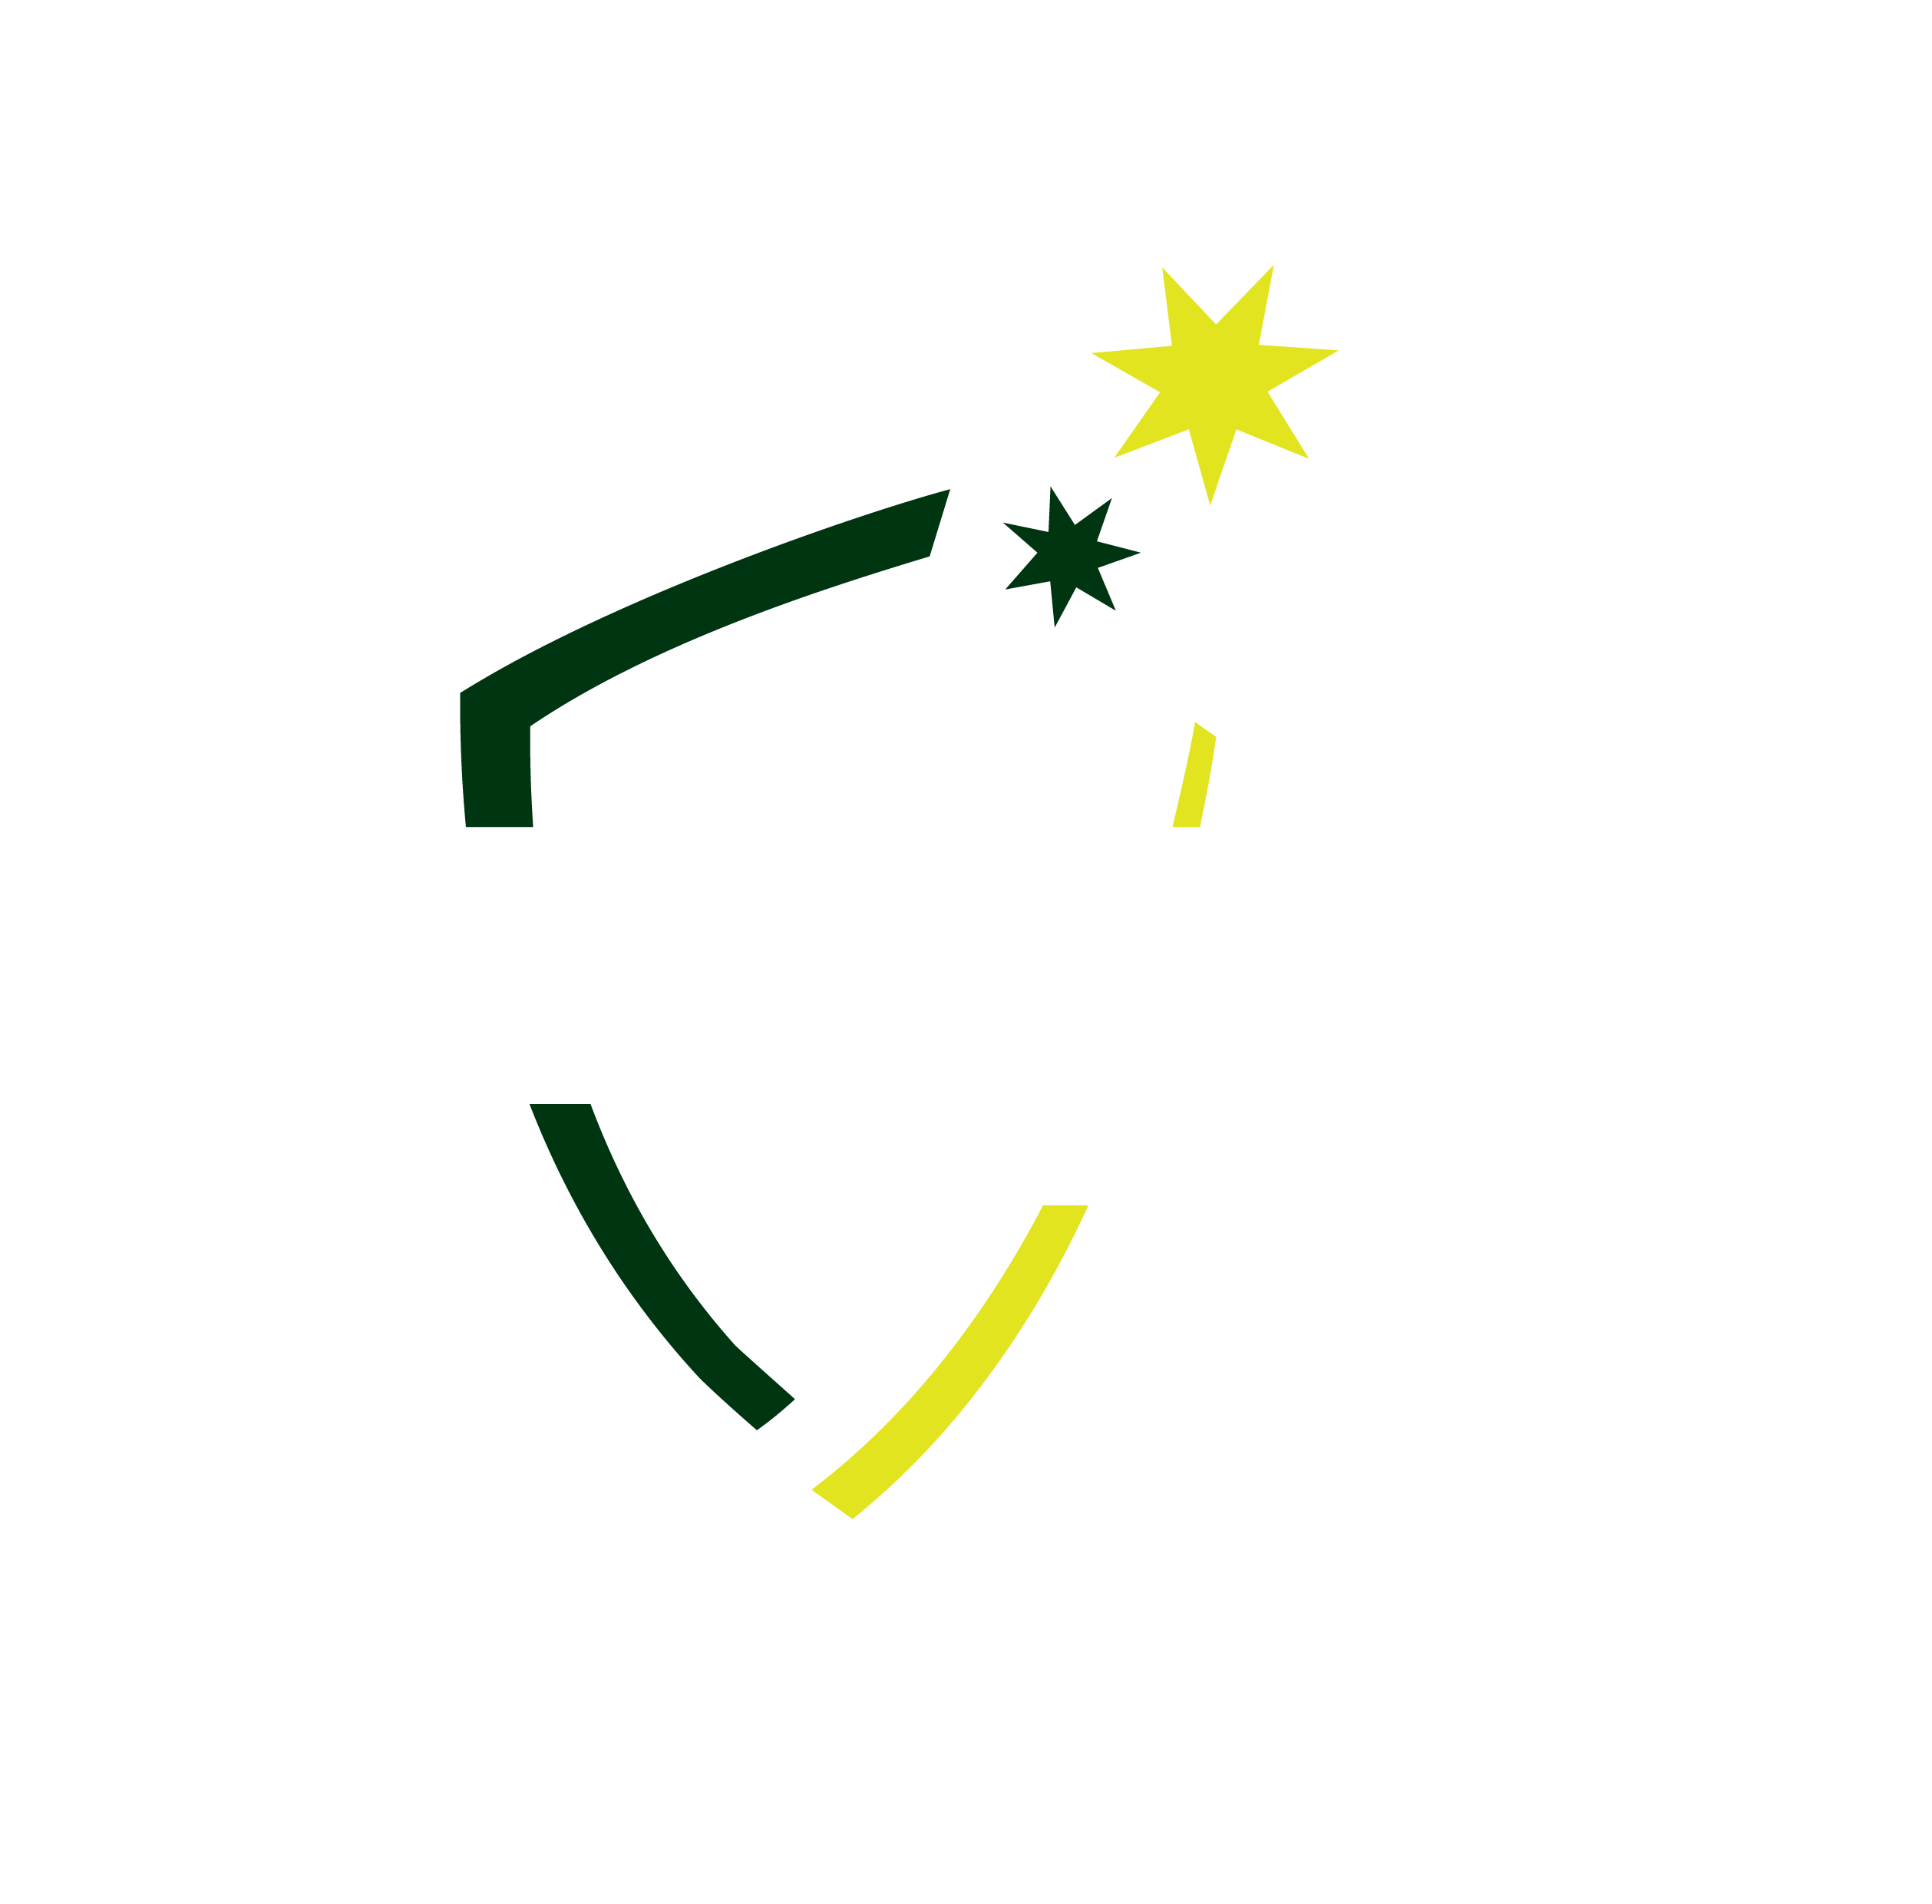 Lord's Taverners Tasmania